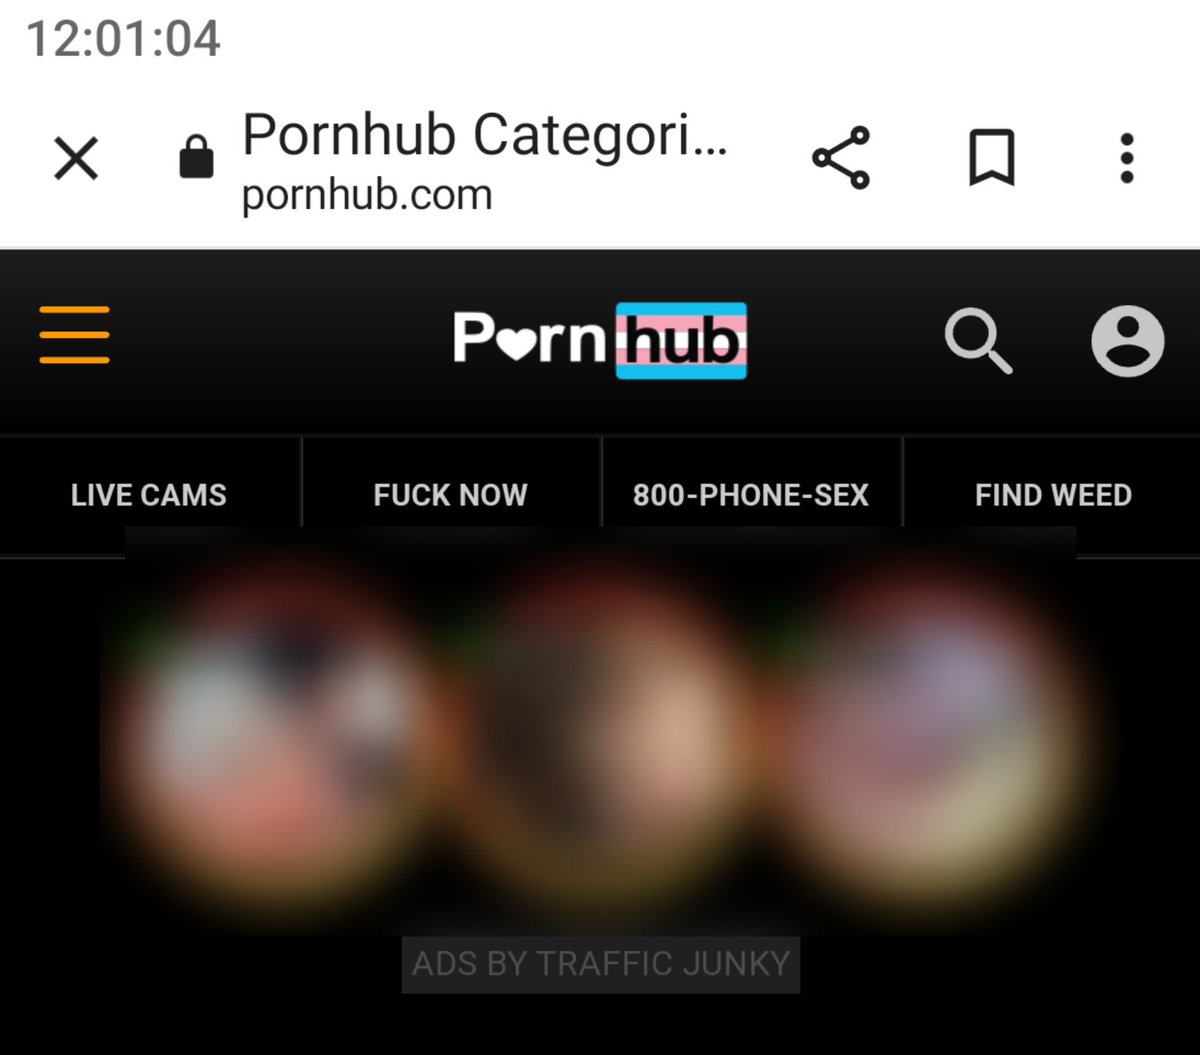 居然是真的喵(ㅇㅅㅇ❀)跨性别日的Pornhub居然有粉蓝白旗子...突然好奇它今天会不会都主要推送跨性别相关的Porn...？ 